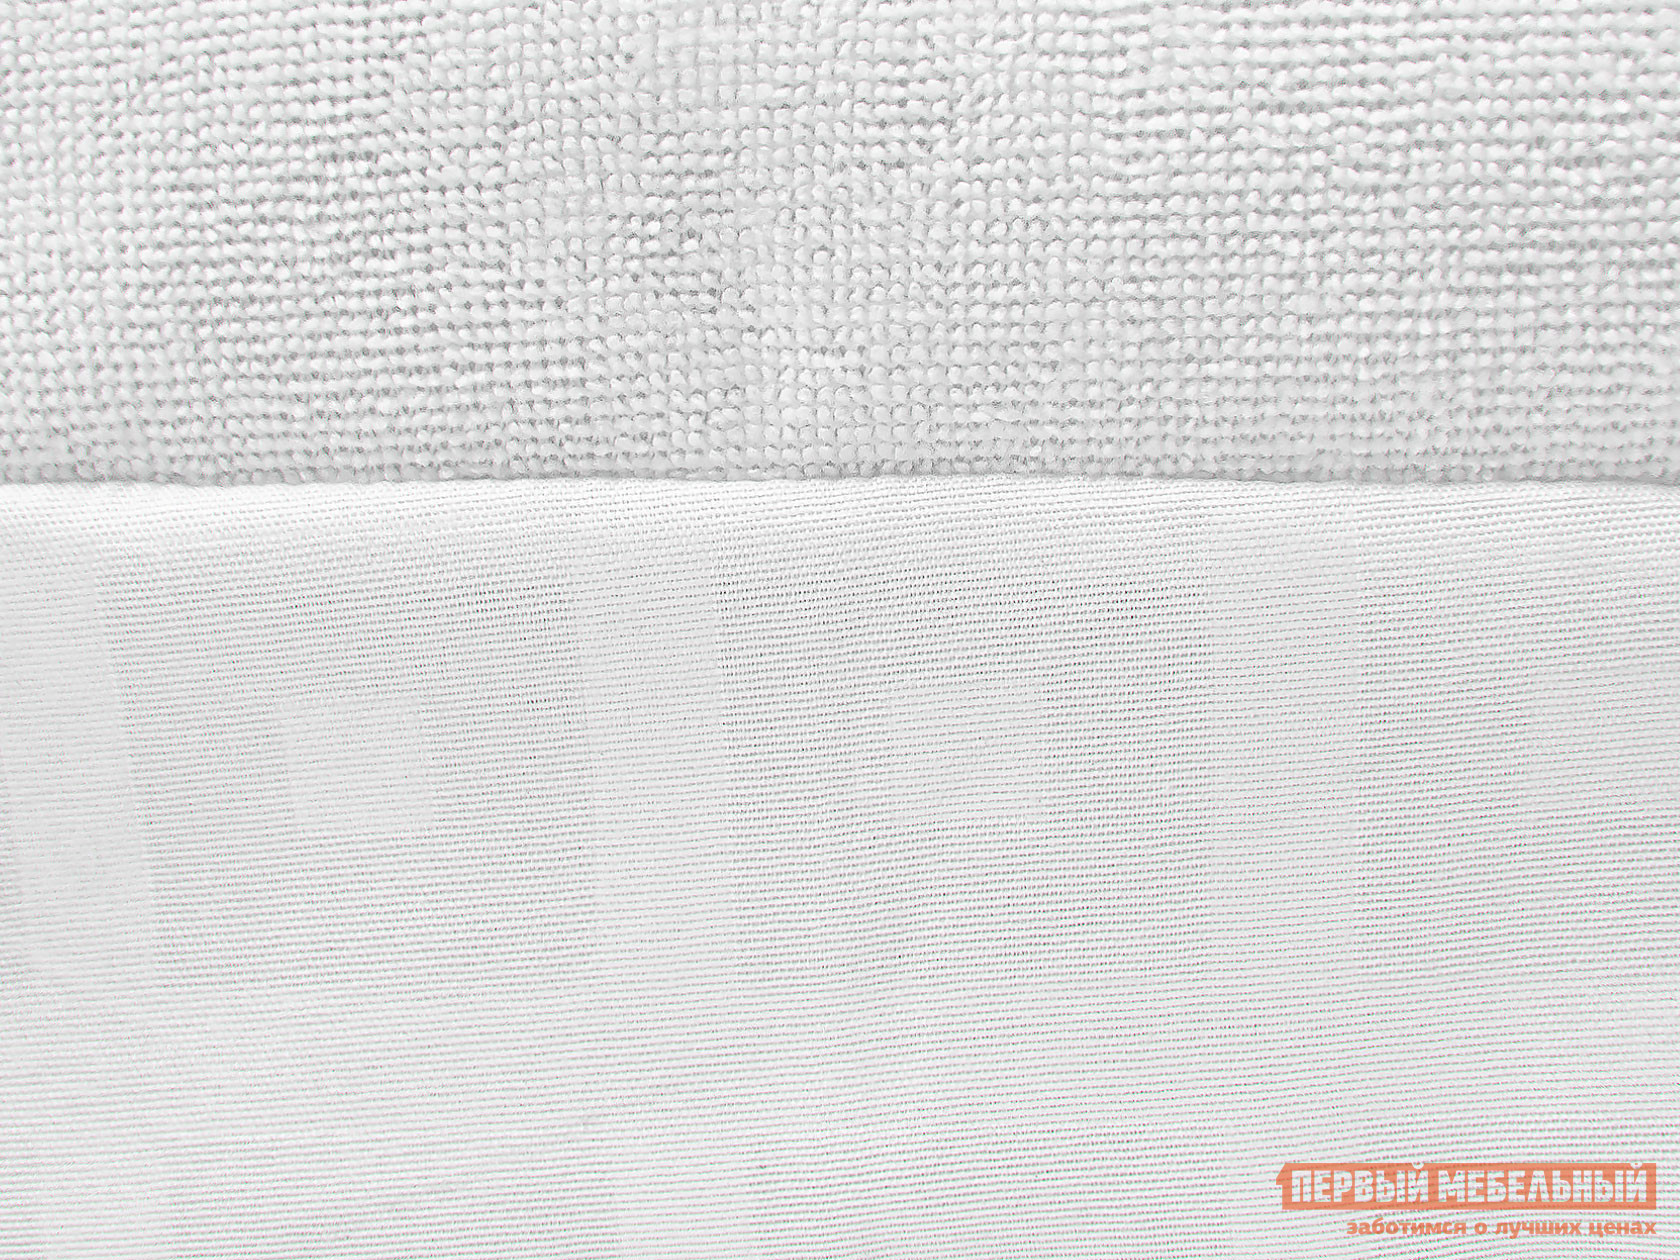 Чехол для матраса  Фулл протекшн с бортом Белый махровый, 1800 Х 2000 мм от Первый Мебельный